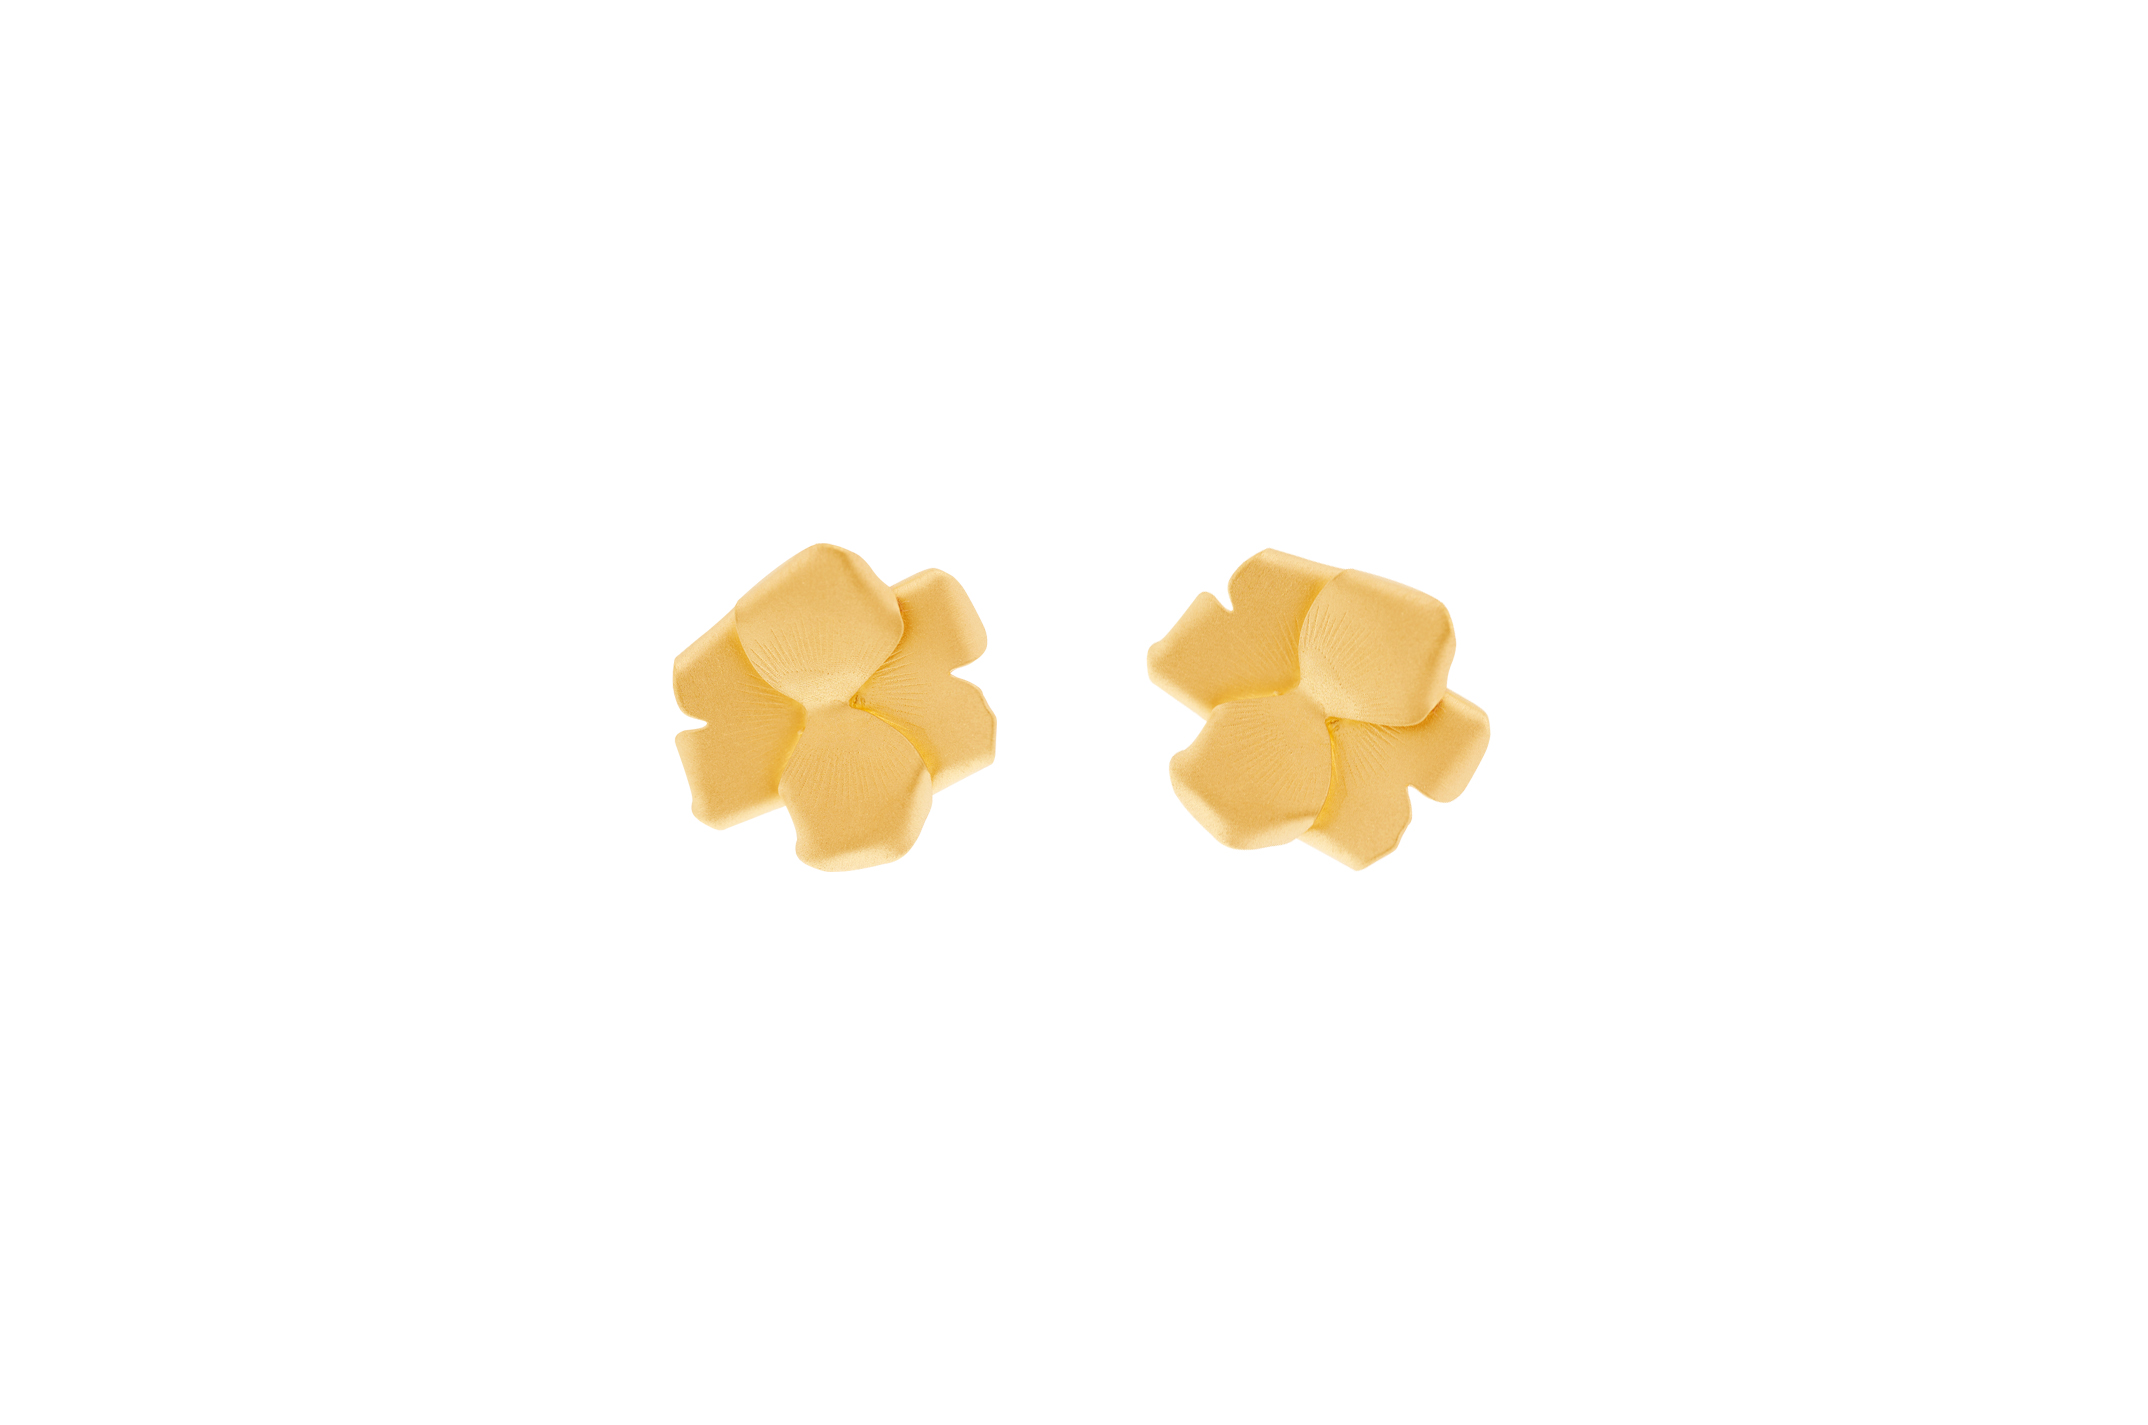 Joia: Brincos;Material: Prata 925;Peso: 2.95 gr;Cor: amarelo;Medida: 1.5 cm/Ø;Género: mulher